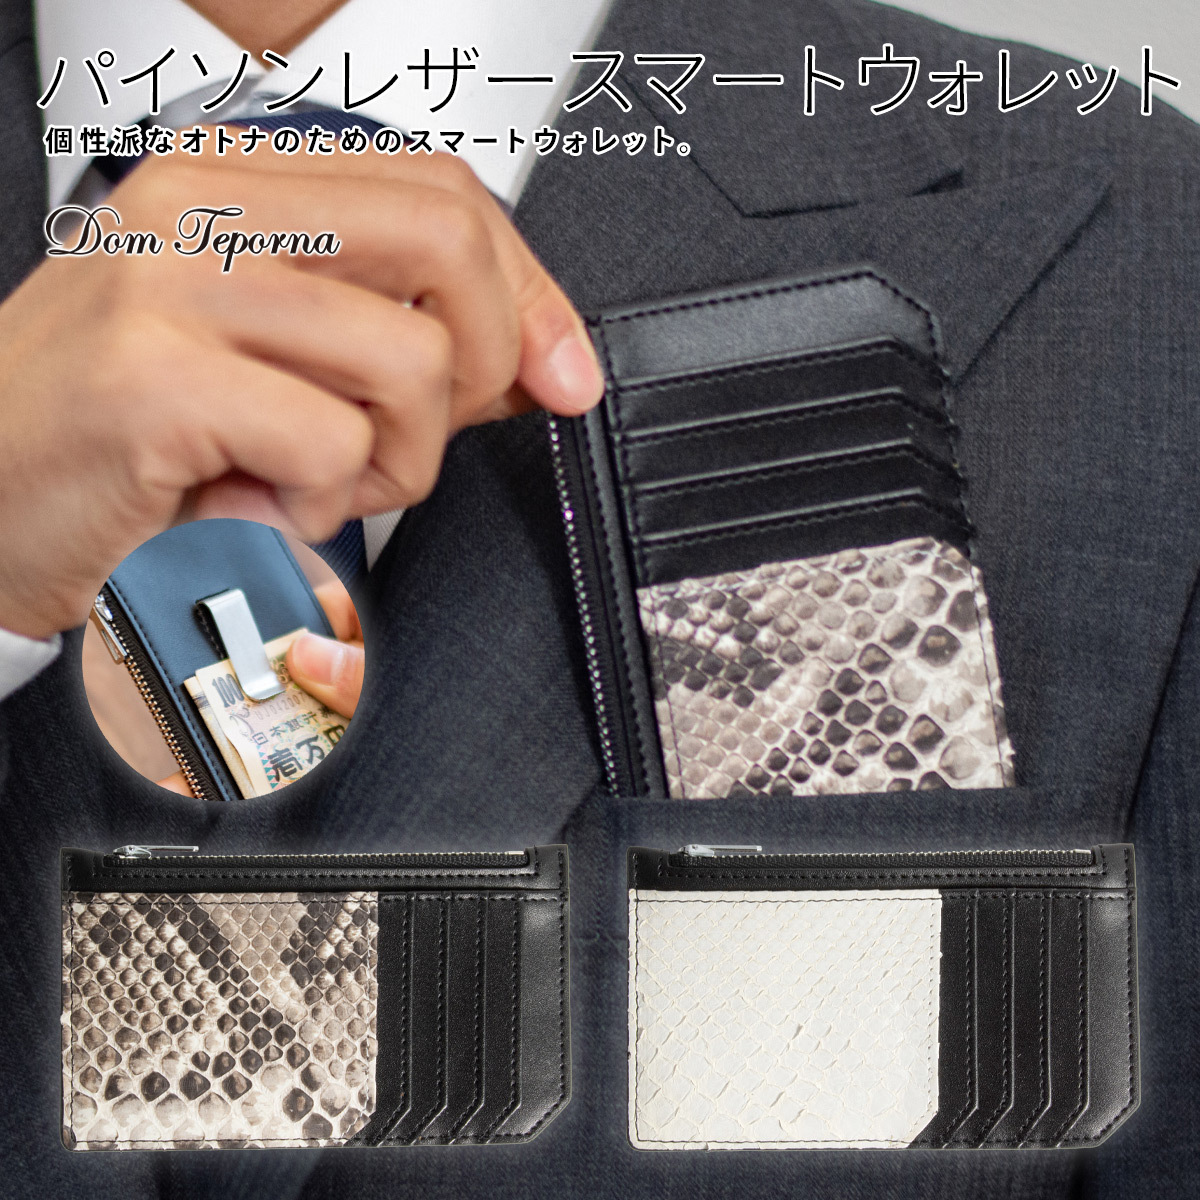 蛇革 パイソン レザー 財布 メンズ 薄い 本革 スマートウォレット 